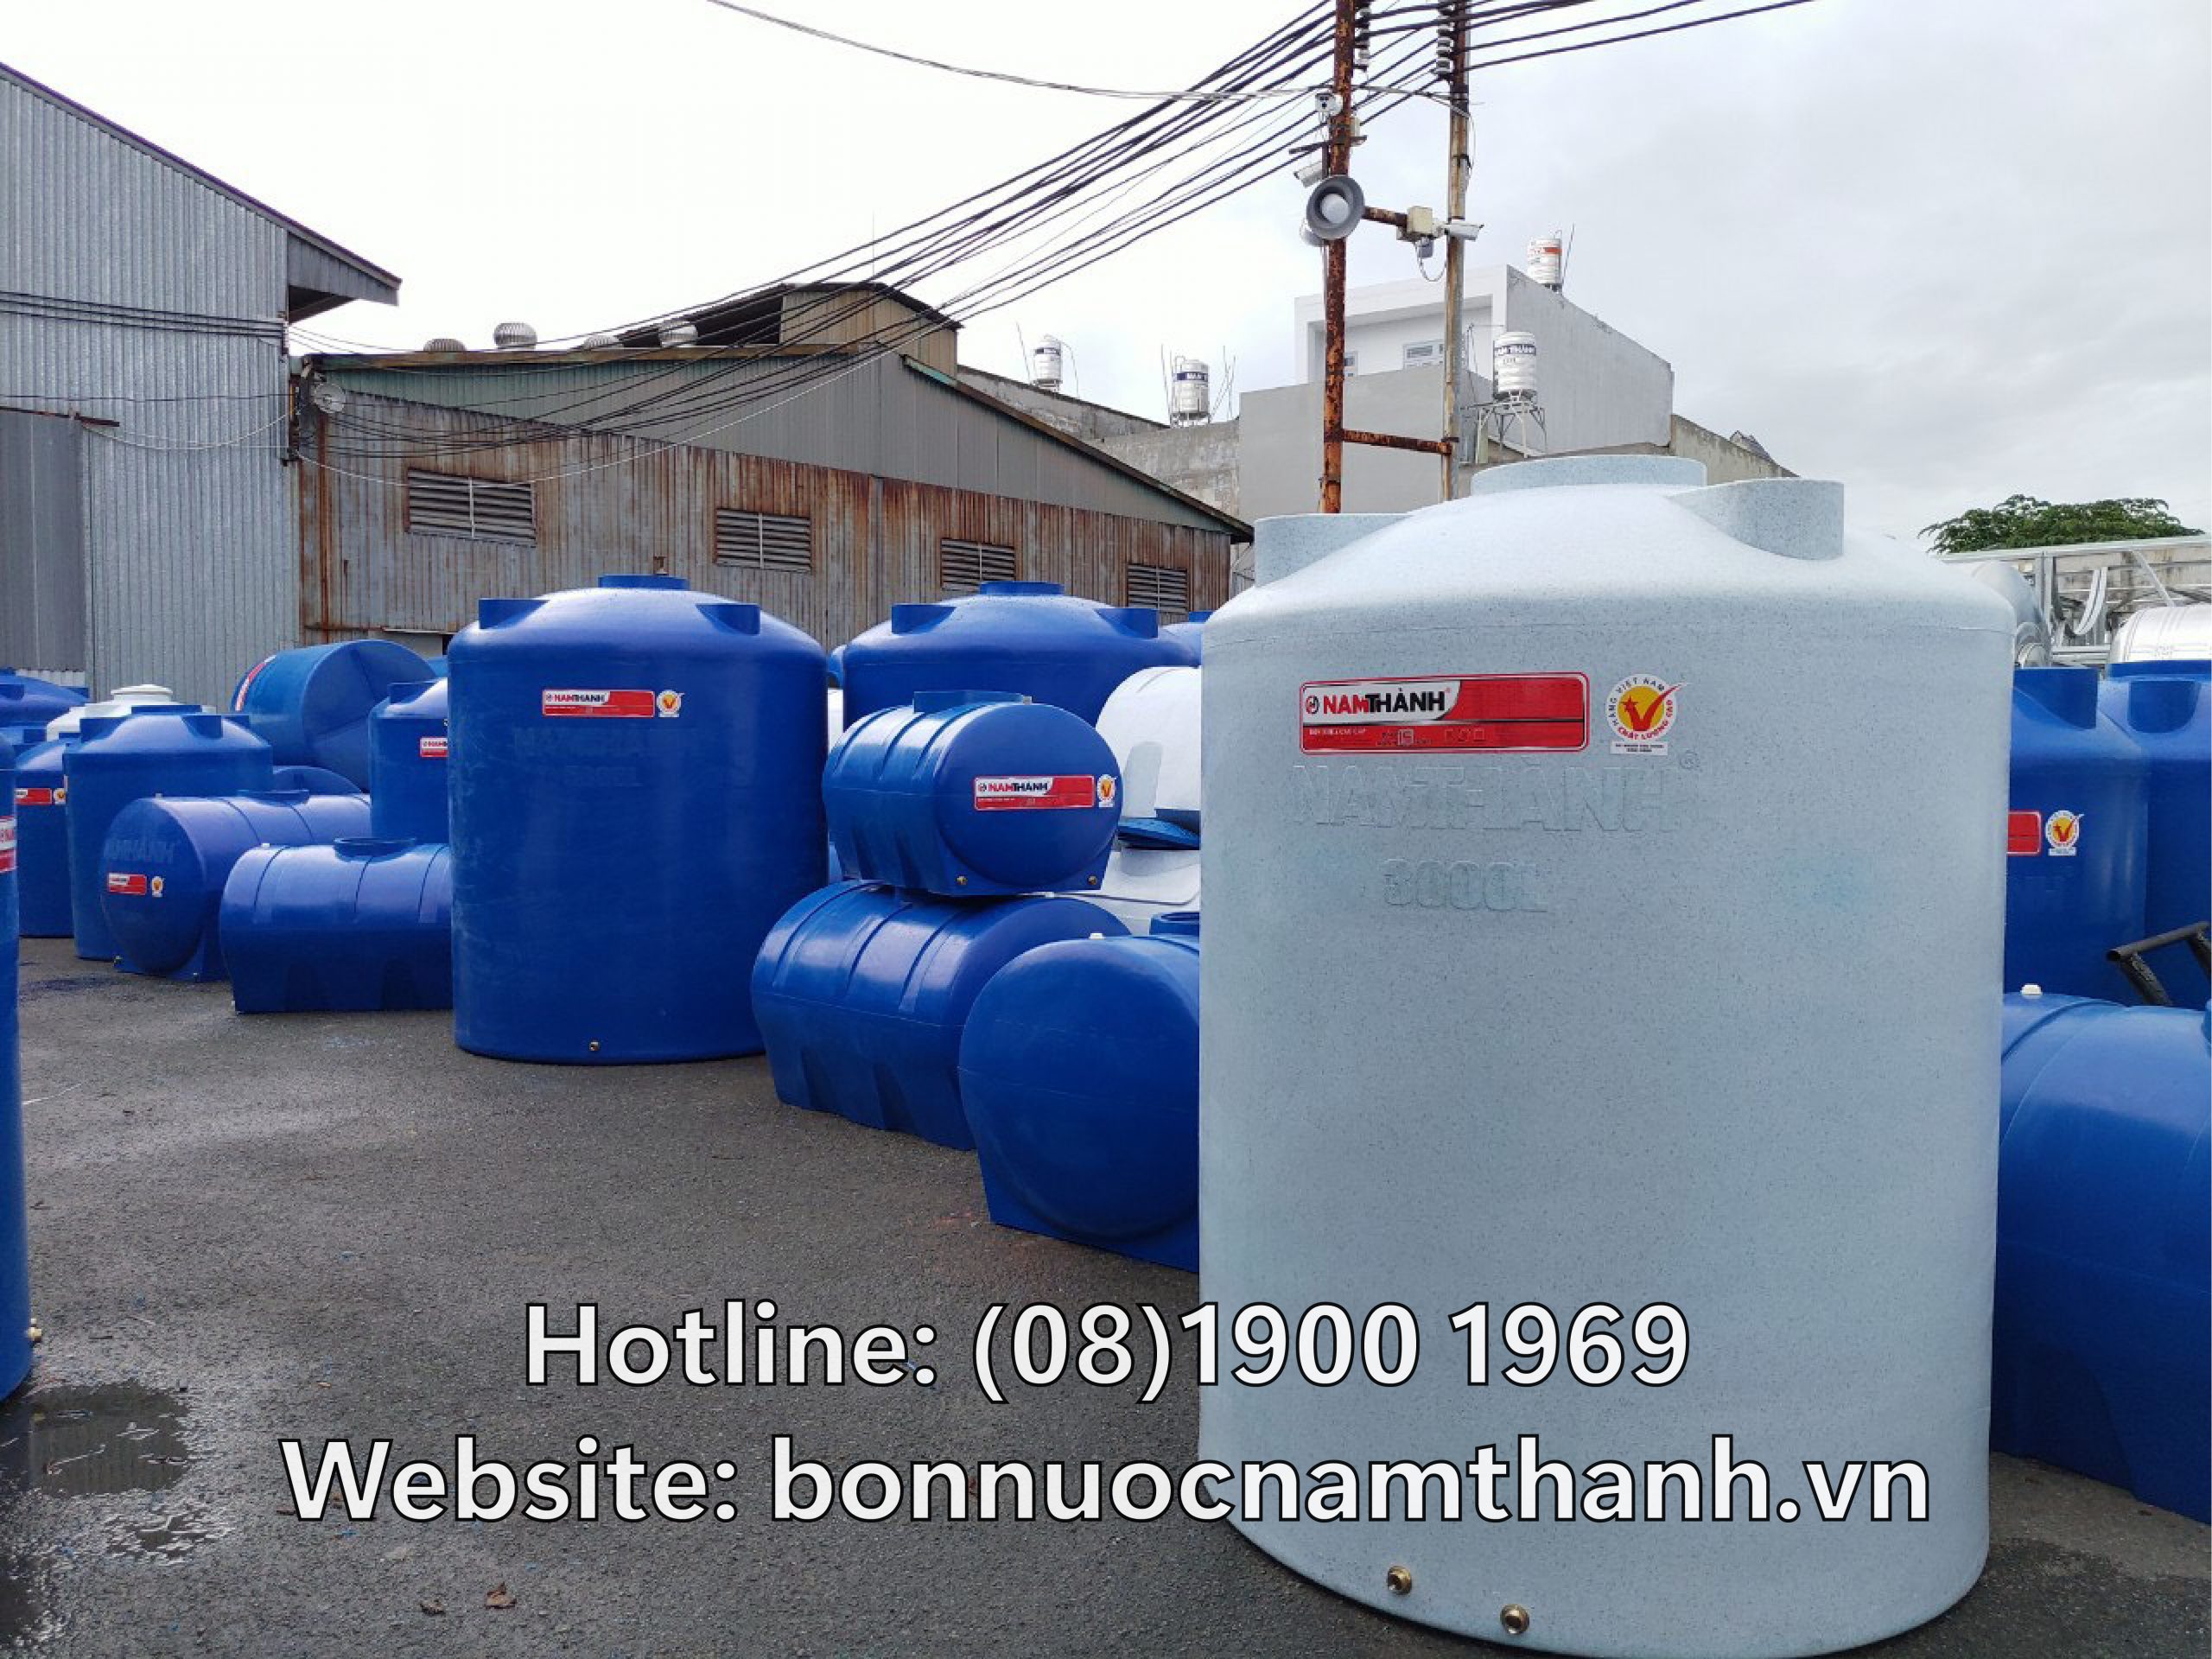 Địa chỉ phân phối sản phẩm bồn nước nhựa Nam Thành chính hãng